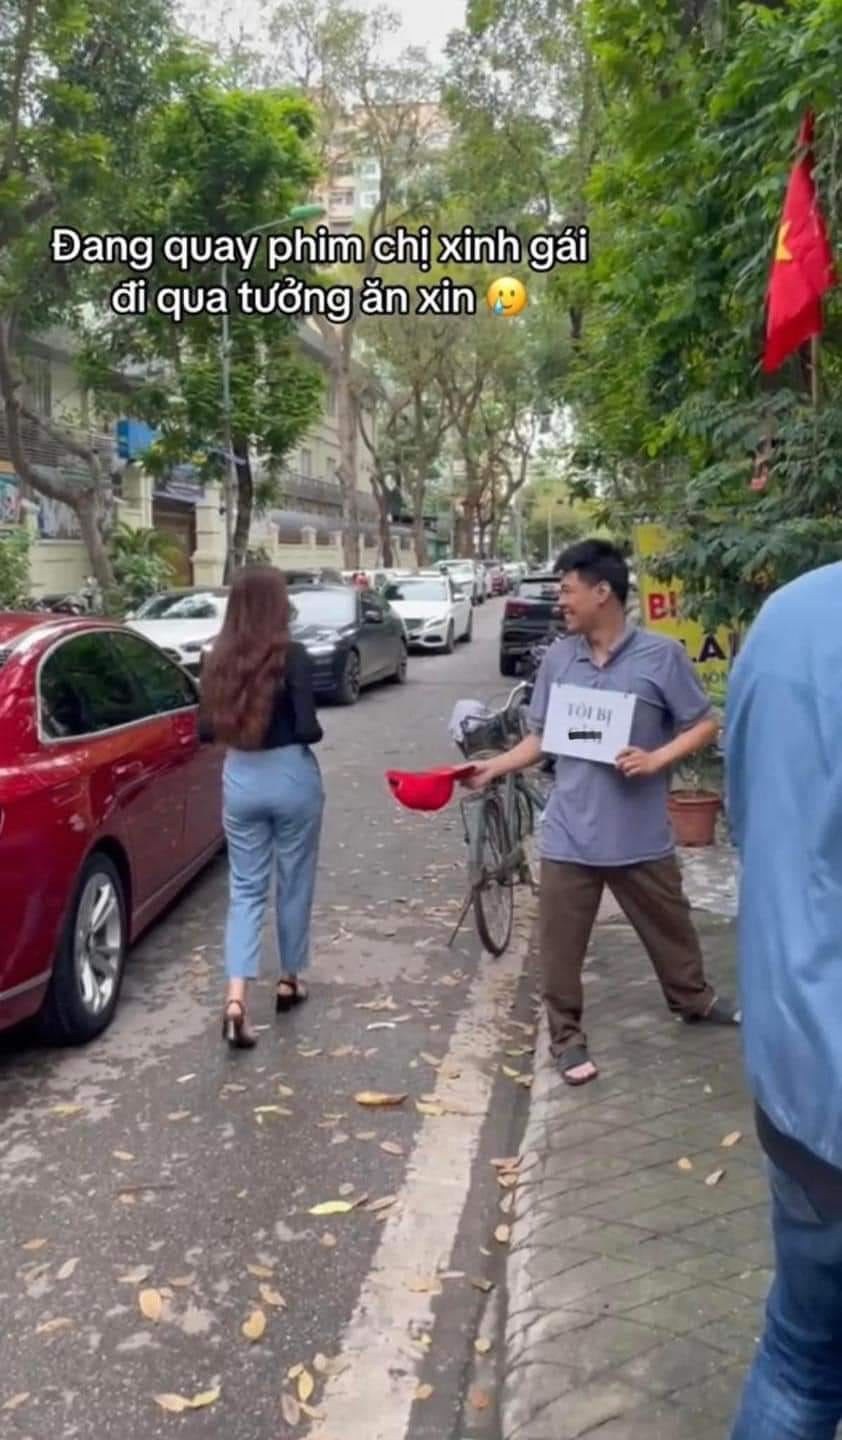 Nam diễn viên Việt nổi tiếng bị bắt gặp đi xin ăn trên phố, phản ứng người đi đường gây chú ý - ảnh 2